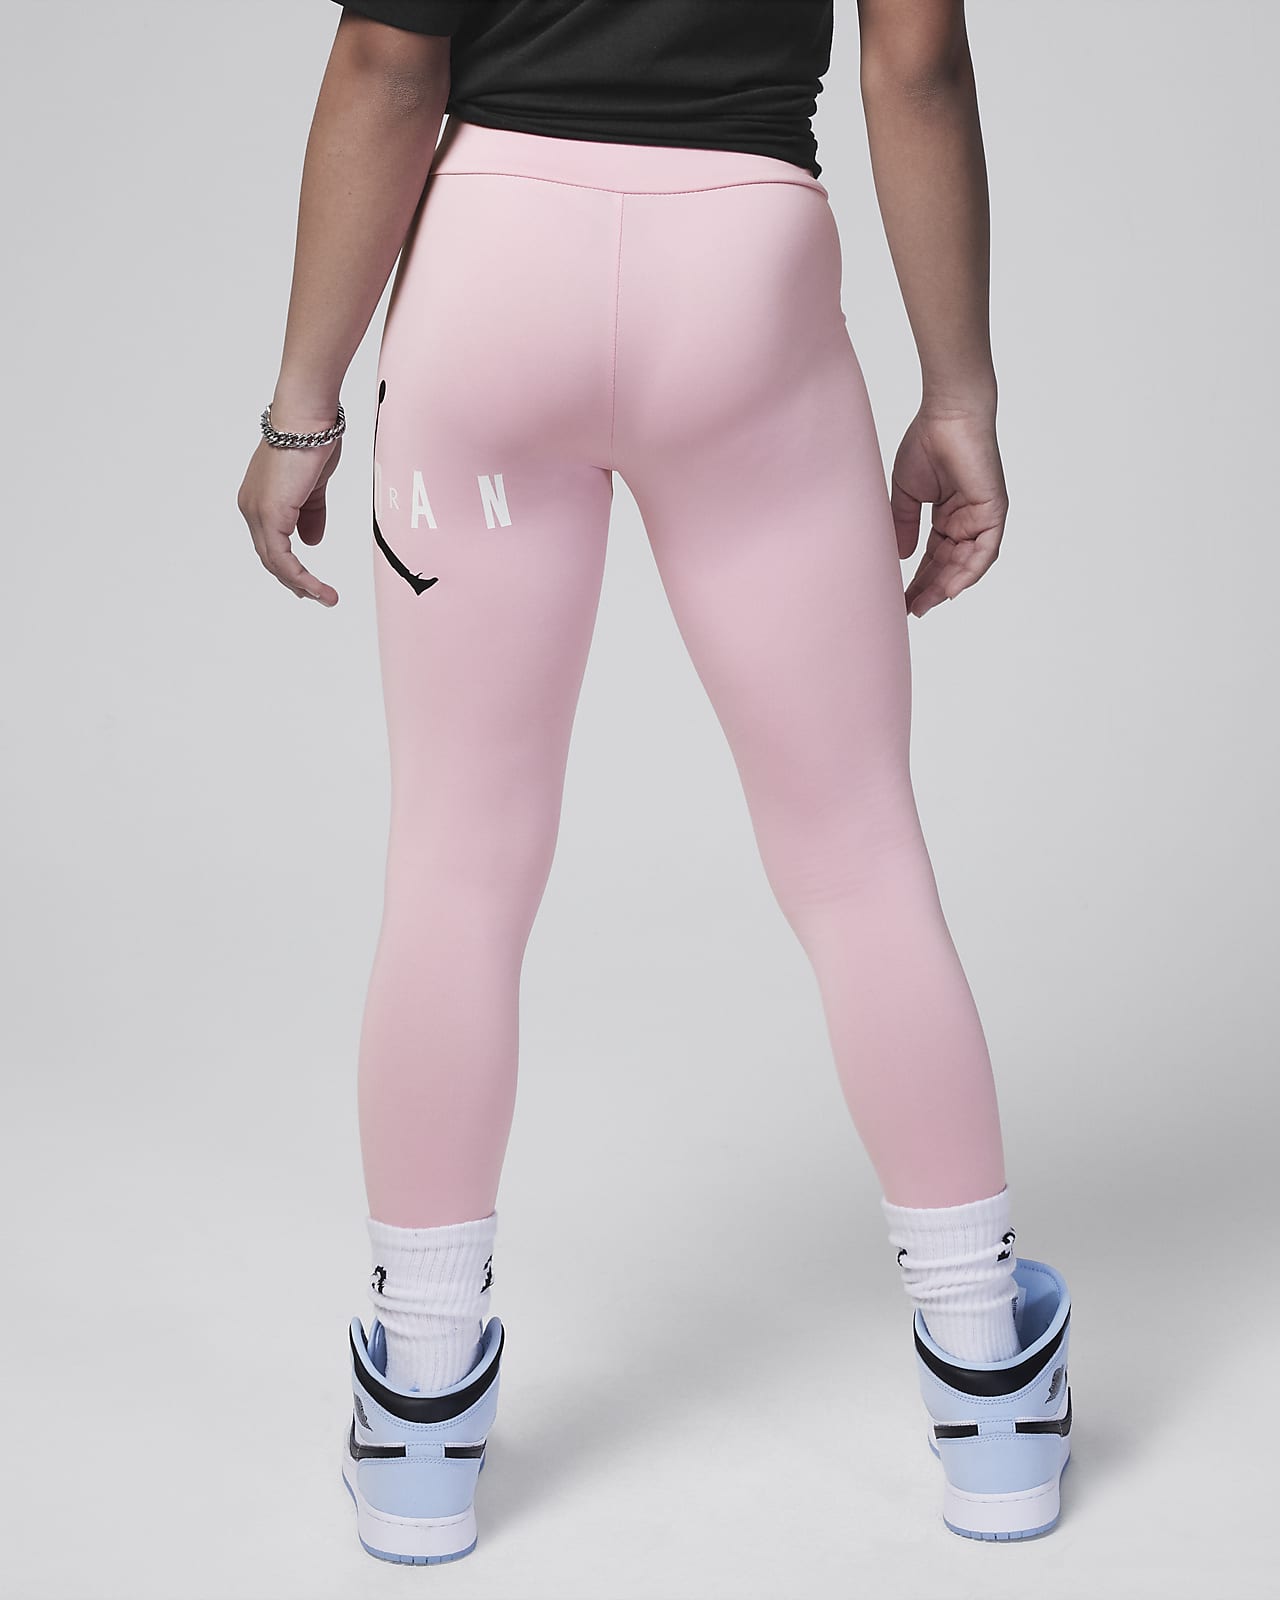 Girls Jordan Jordan Pink Pack High Rise Leggings - Girls' Grade School Black/Pink  Size M - Yahoo Shopping